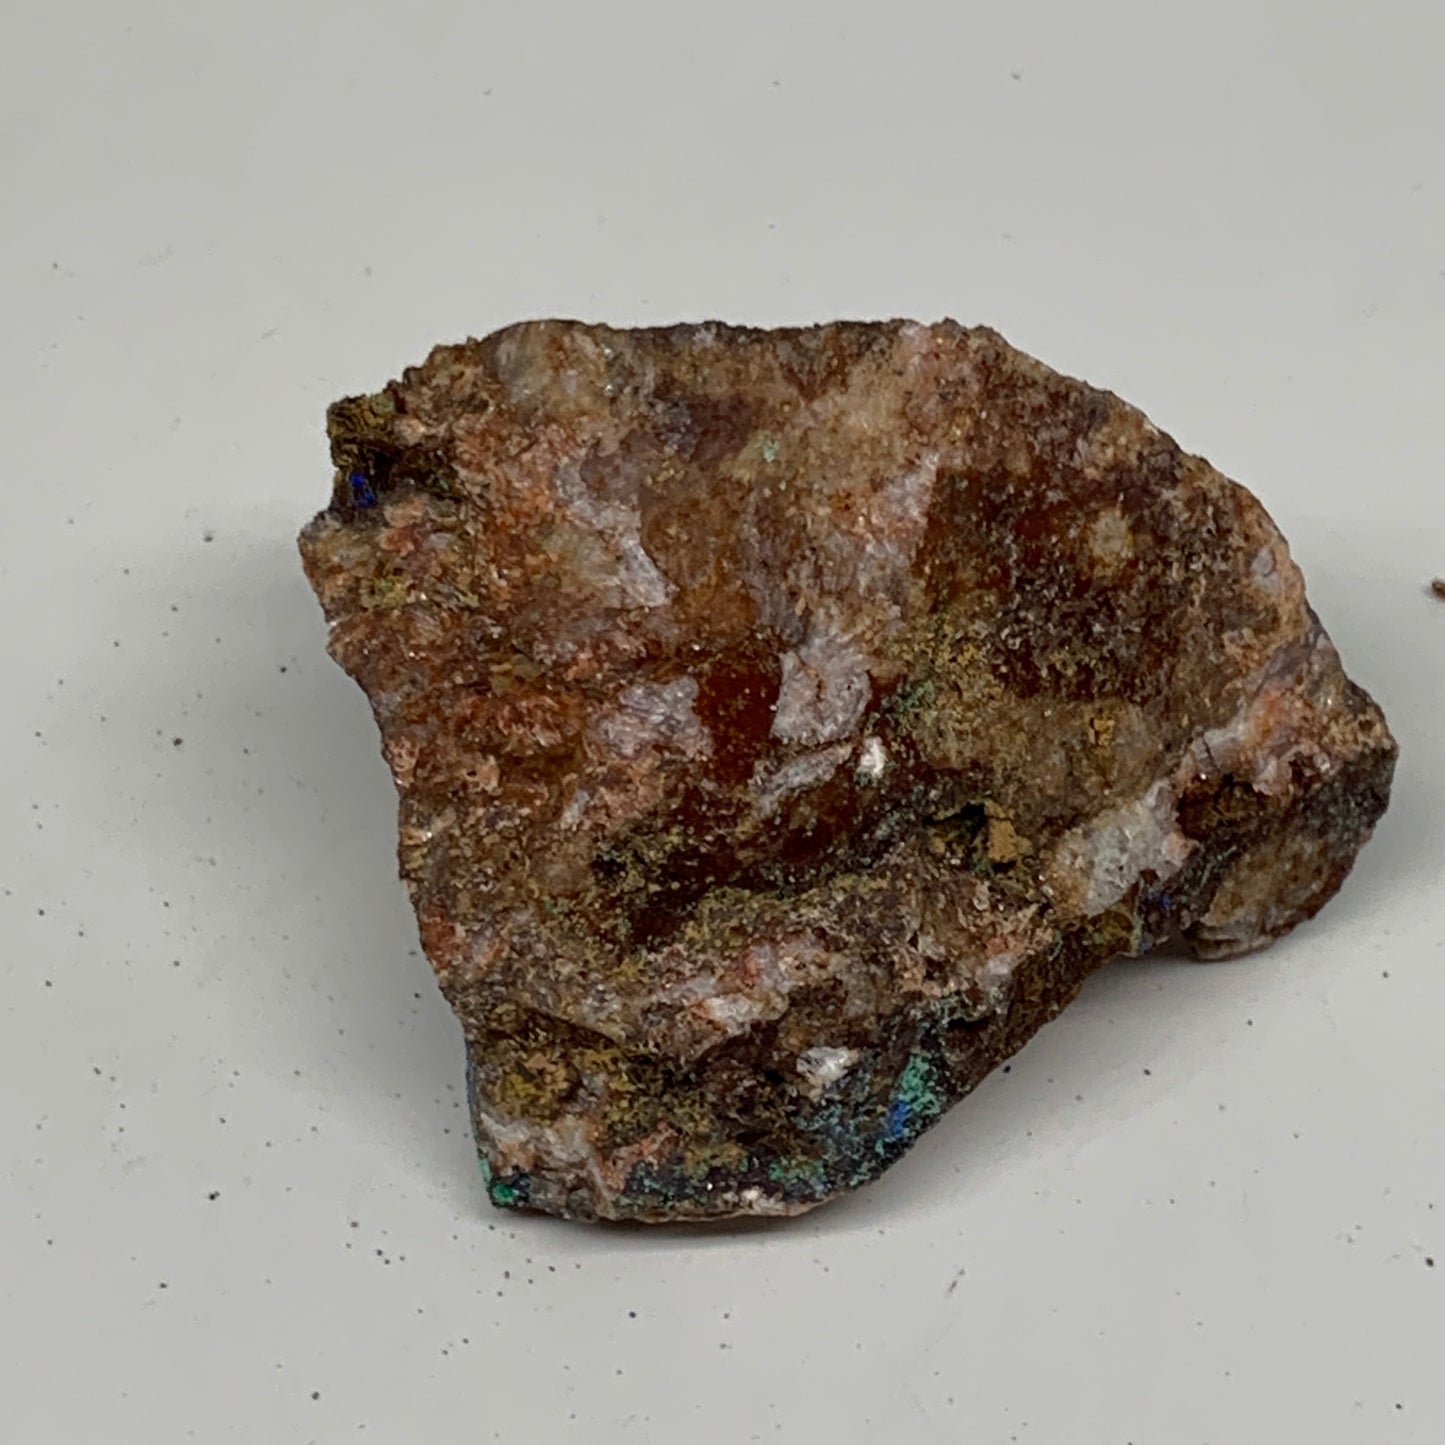 124.1g, 2.4"x2.1"x1.6", Azurite Malachite Cerussite Mineral Specimen @Morocco, B